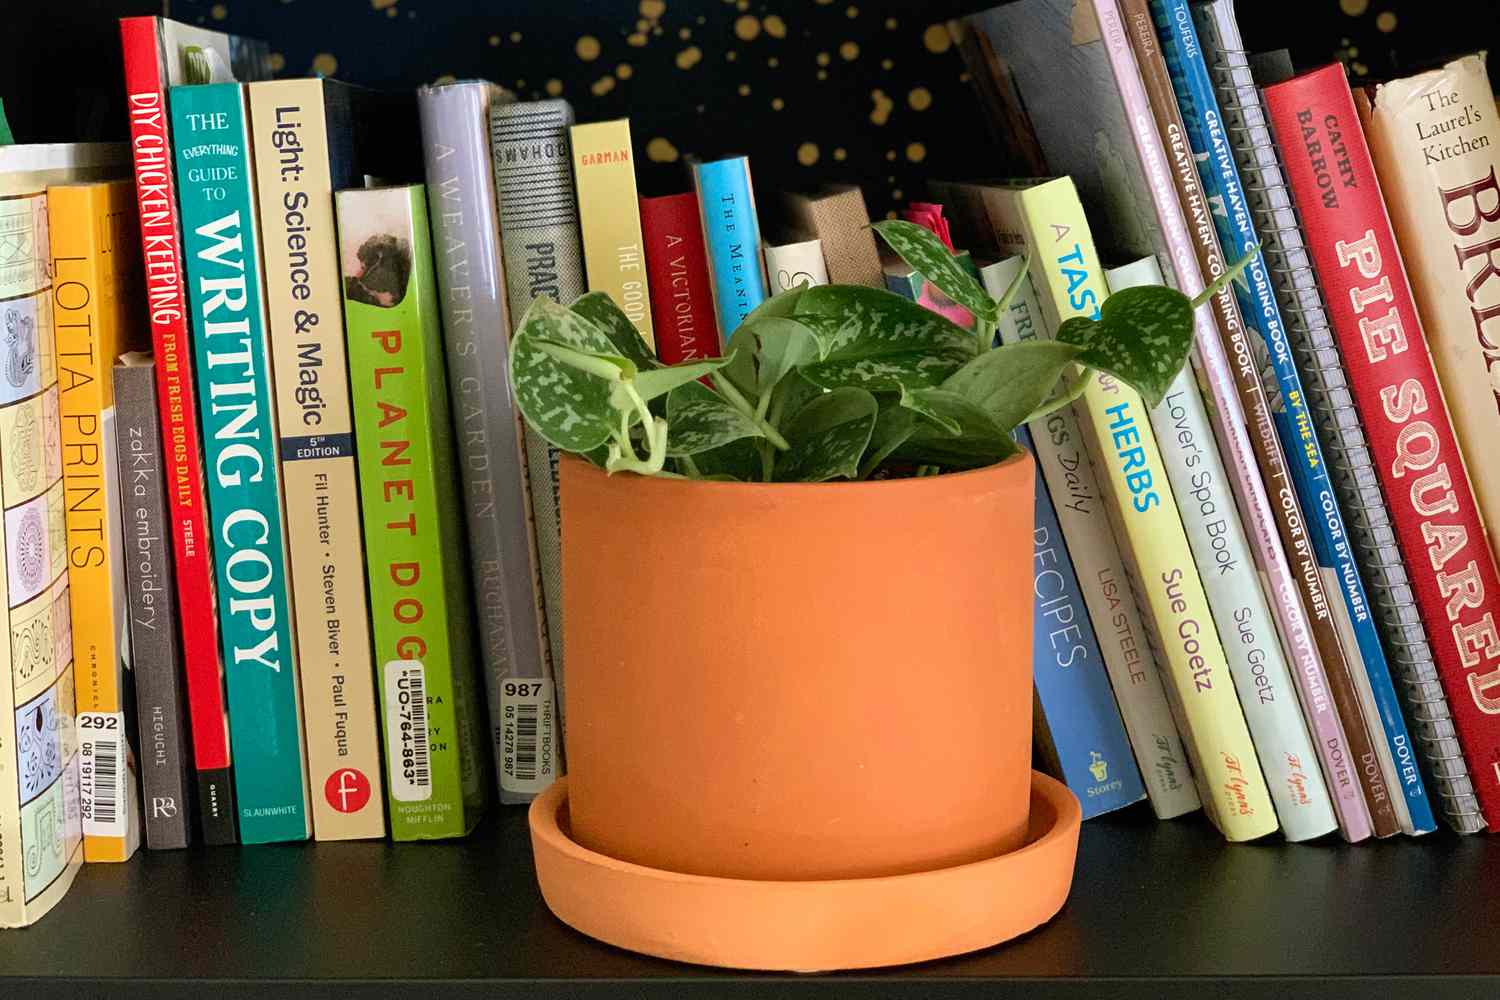 Uma trepadeira-anã prateada (Scindapsus pictus) em um vaso de terracota em uma prateleira com livros ao fundo